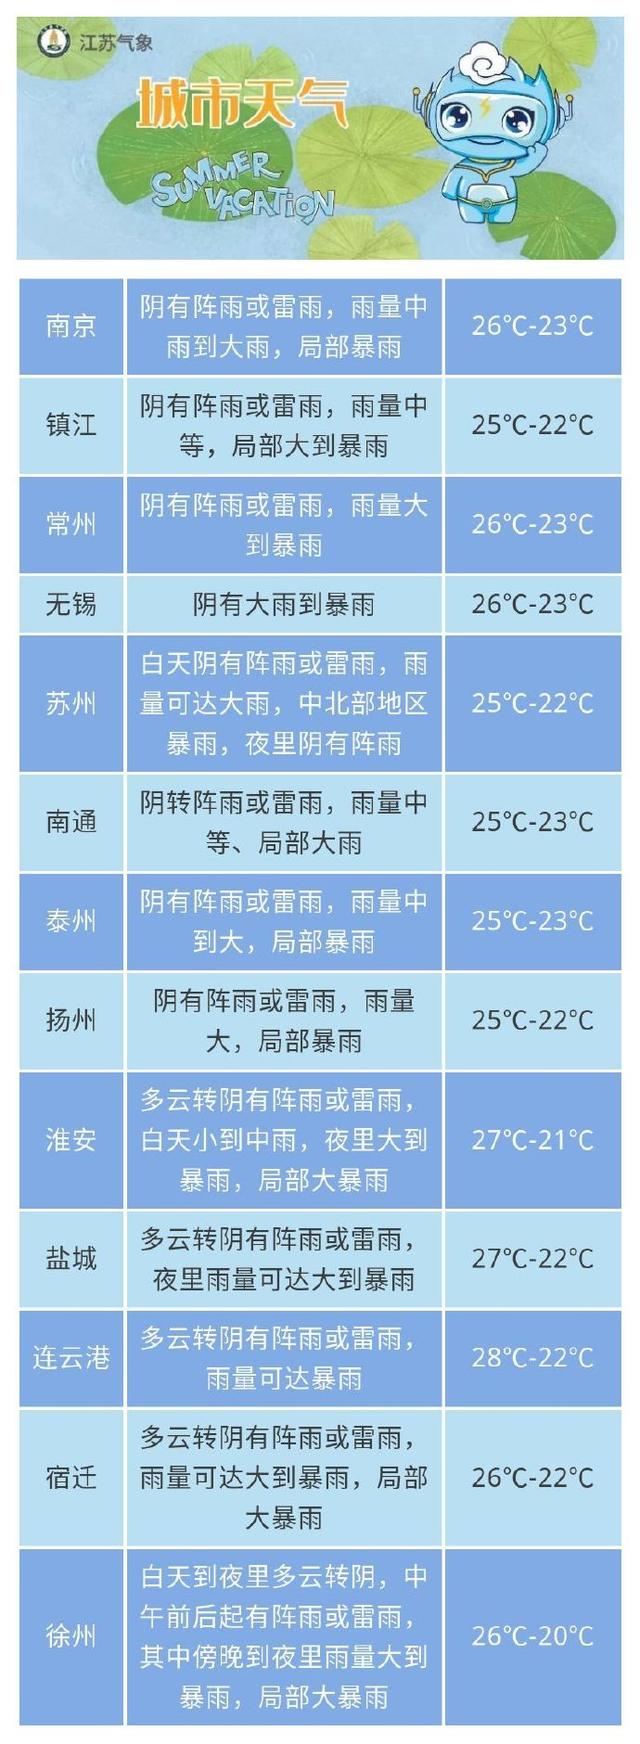 江苏省气象台发布13城市雨情预报，全部有雨